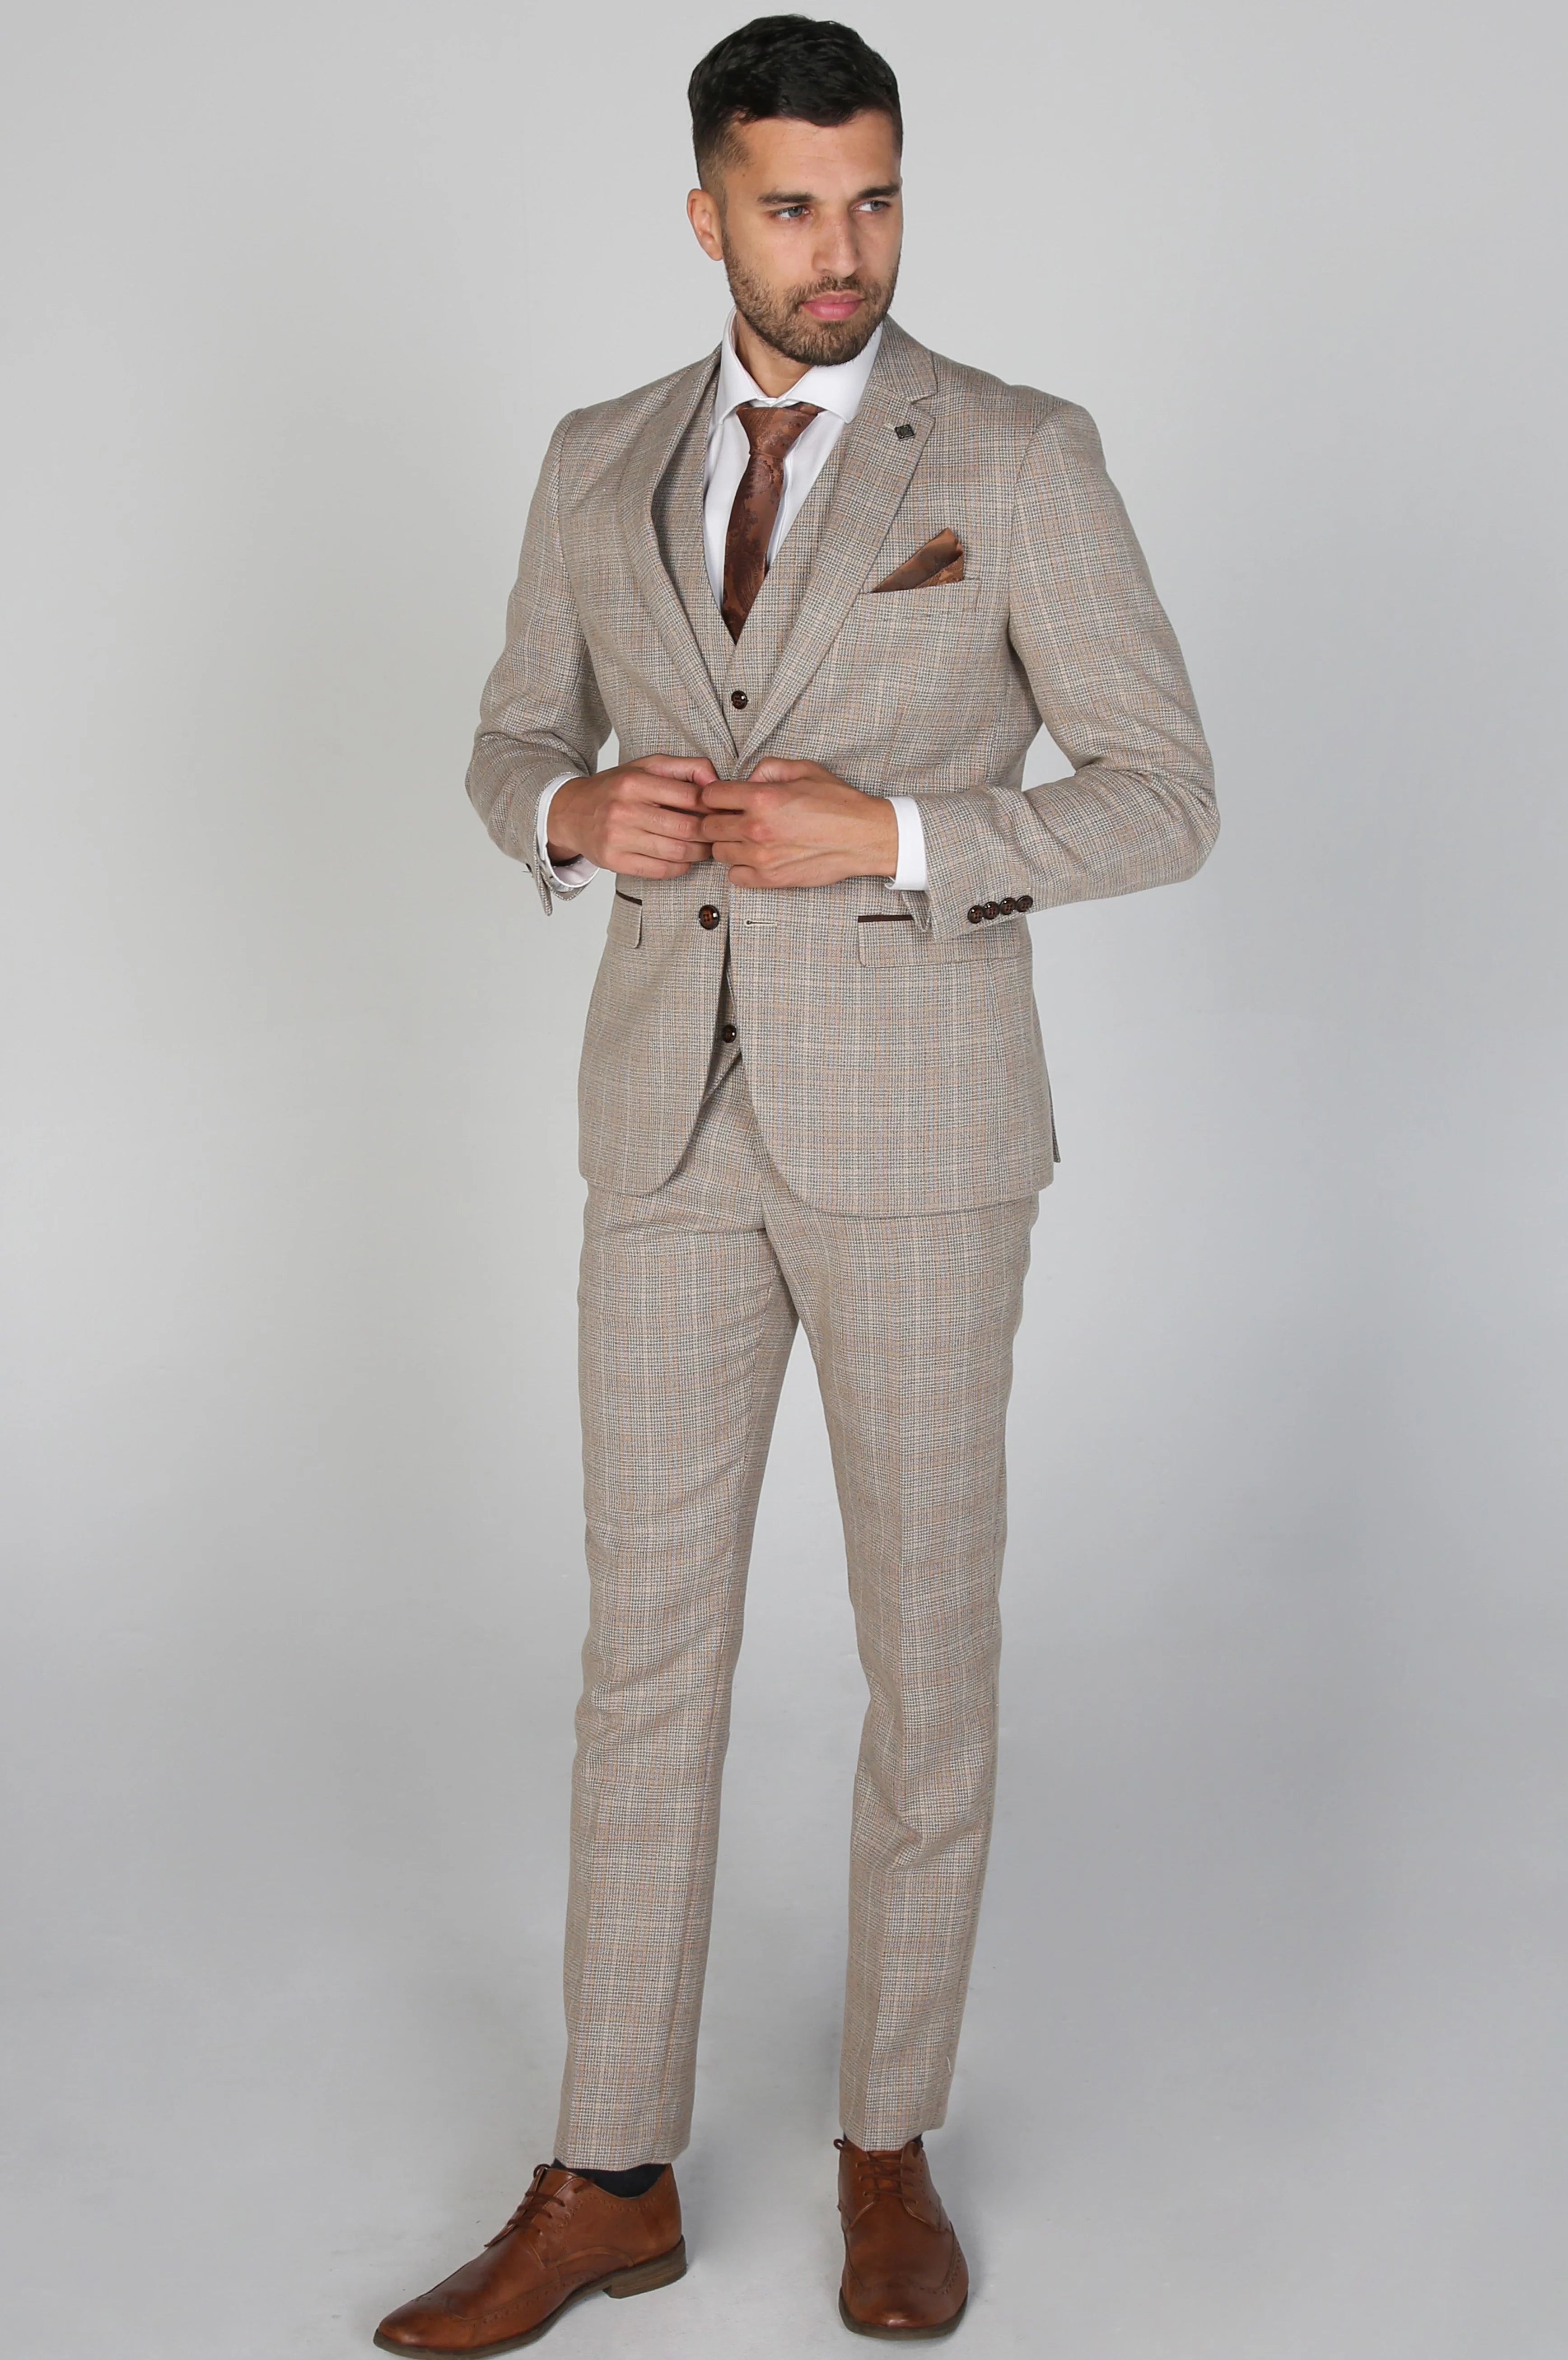 Paul Andrew -Holland Beige Men's Three Piece Suit